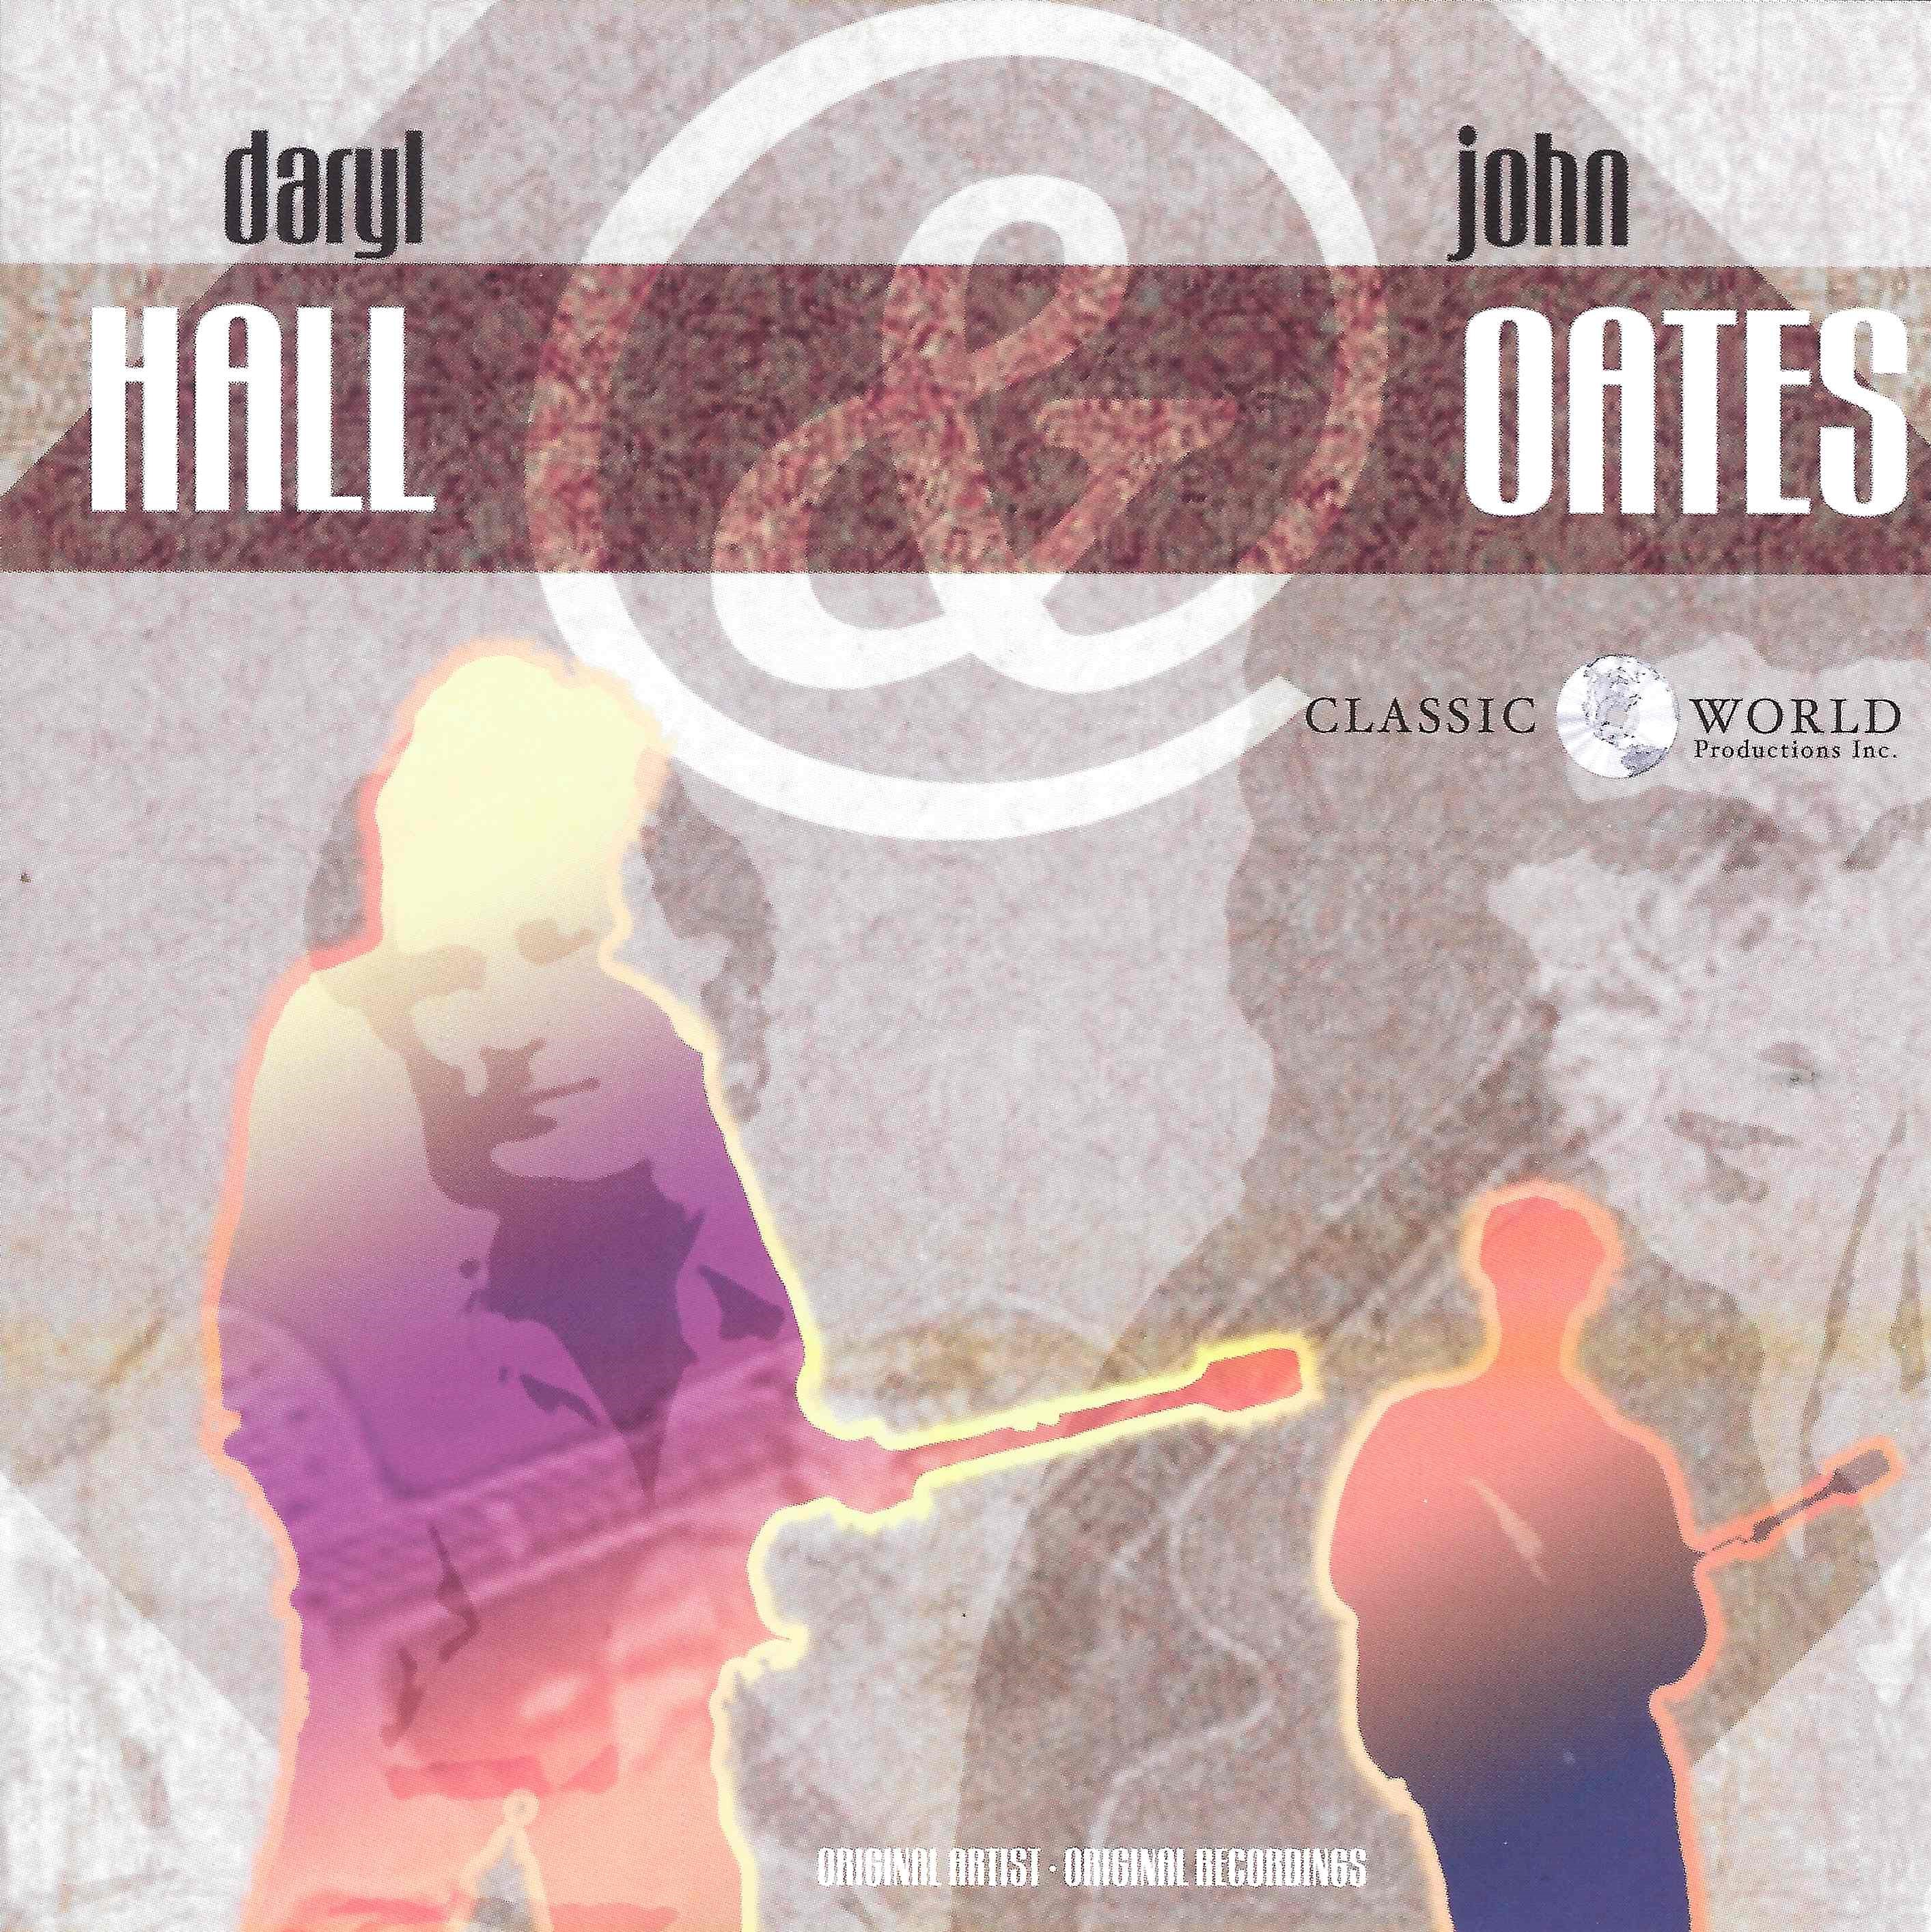 The singles hall and oates rar